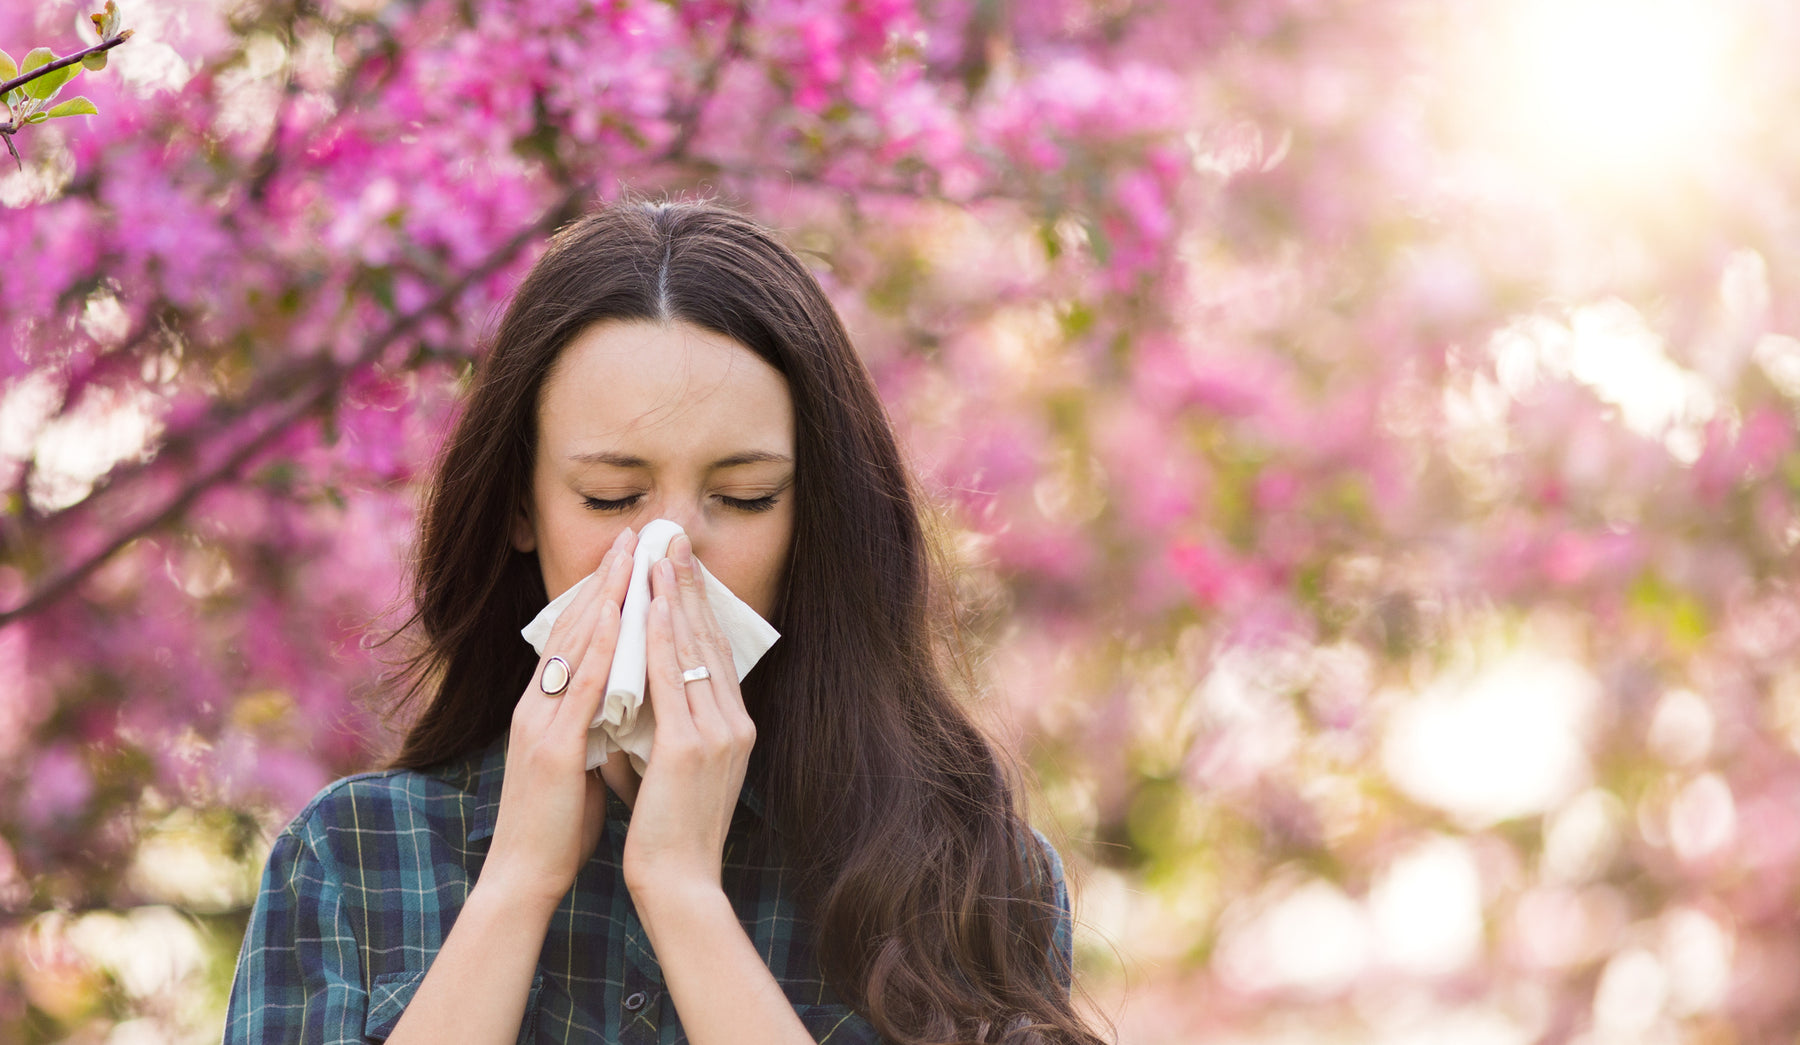 Pollenallergie behandeln - welche Möglichkeiten gibt es? Ein Arzt klärt auf